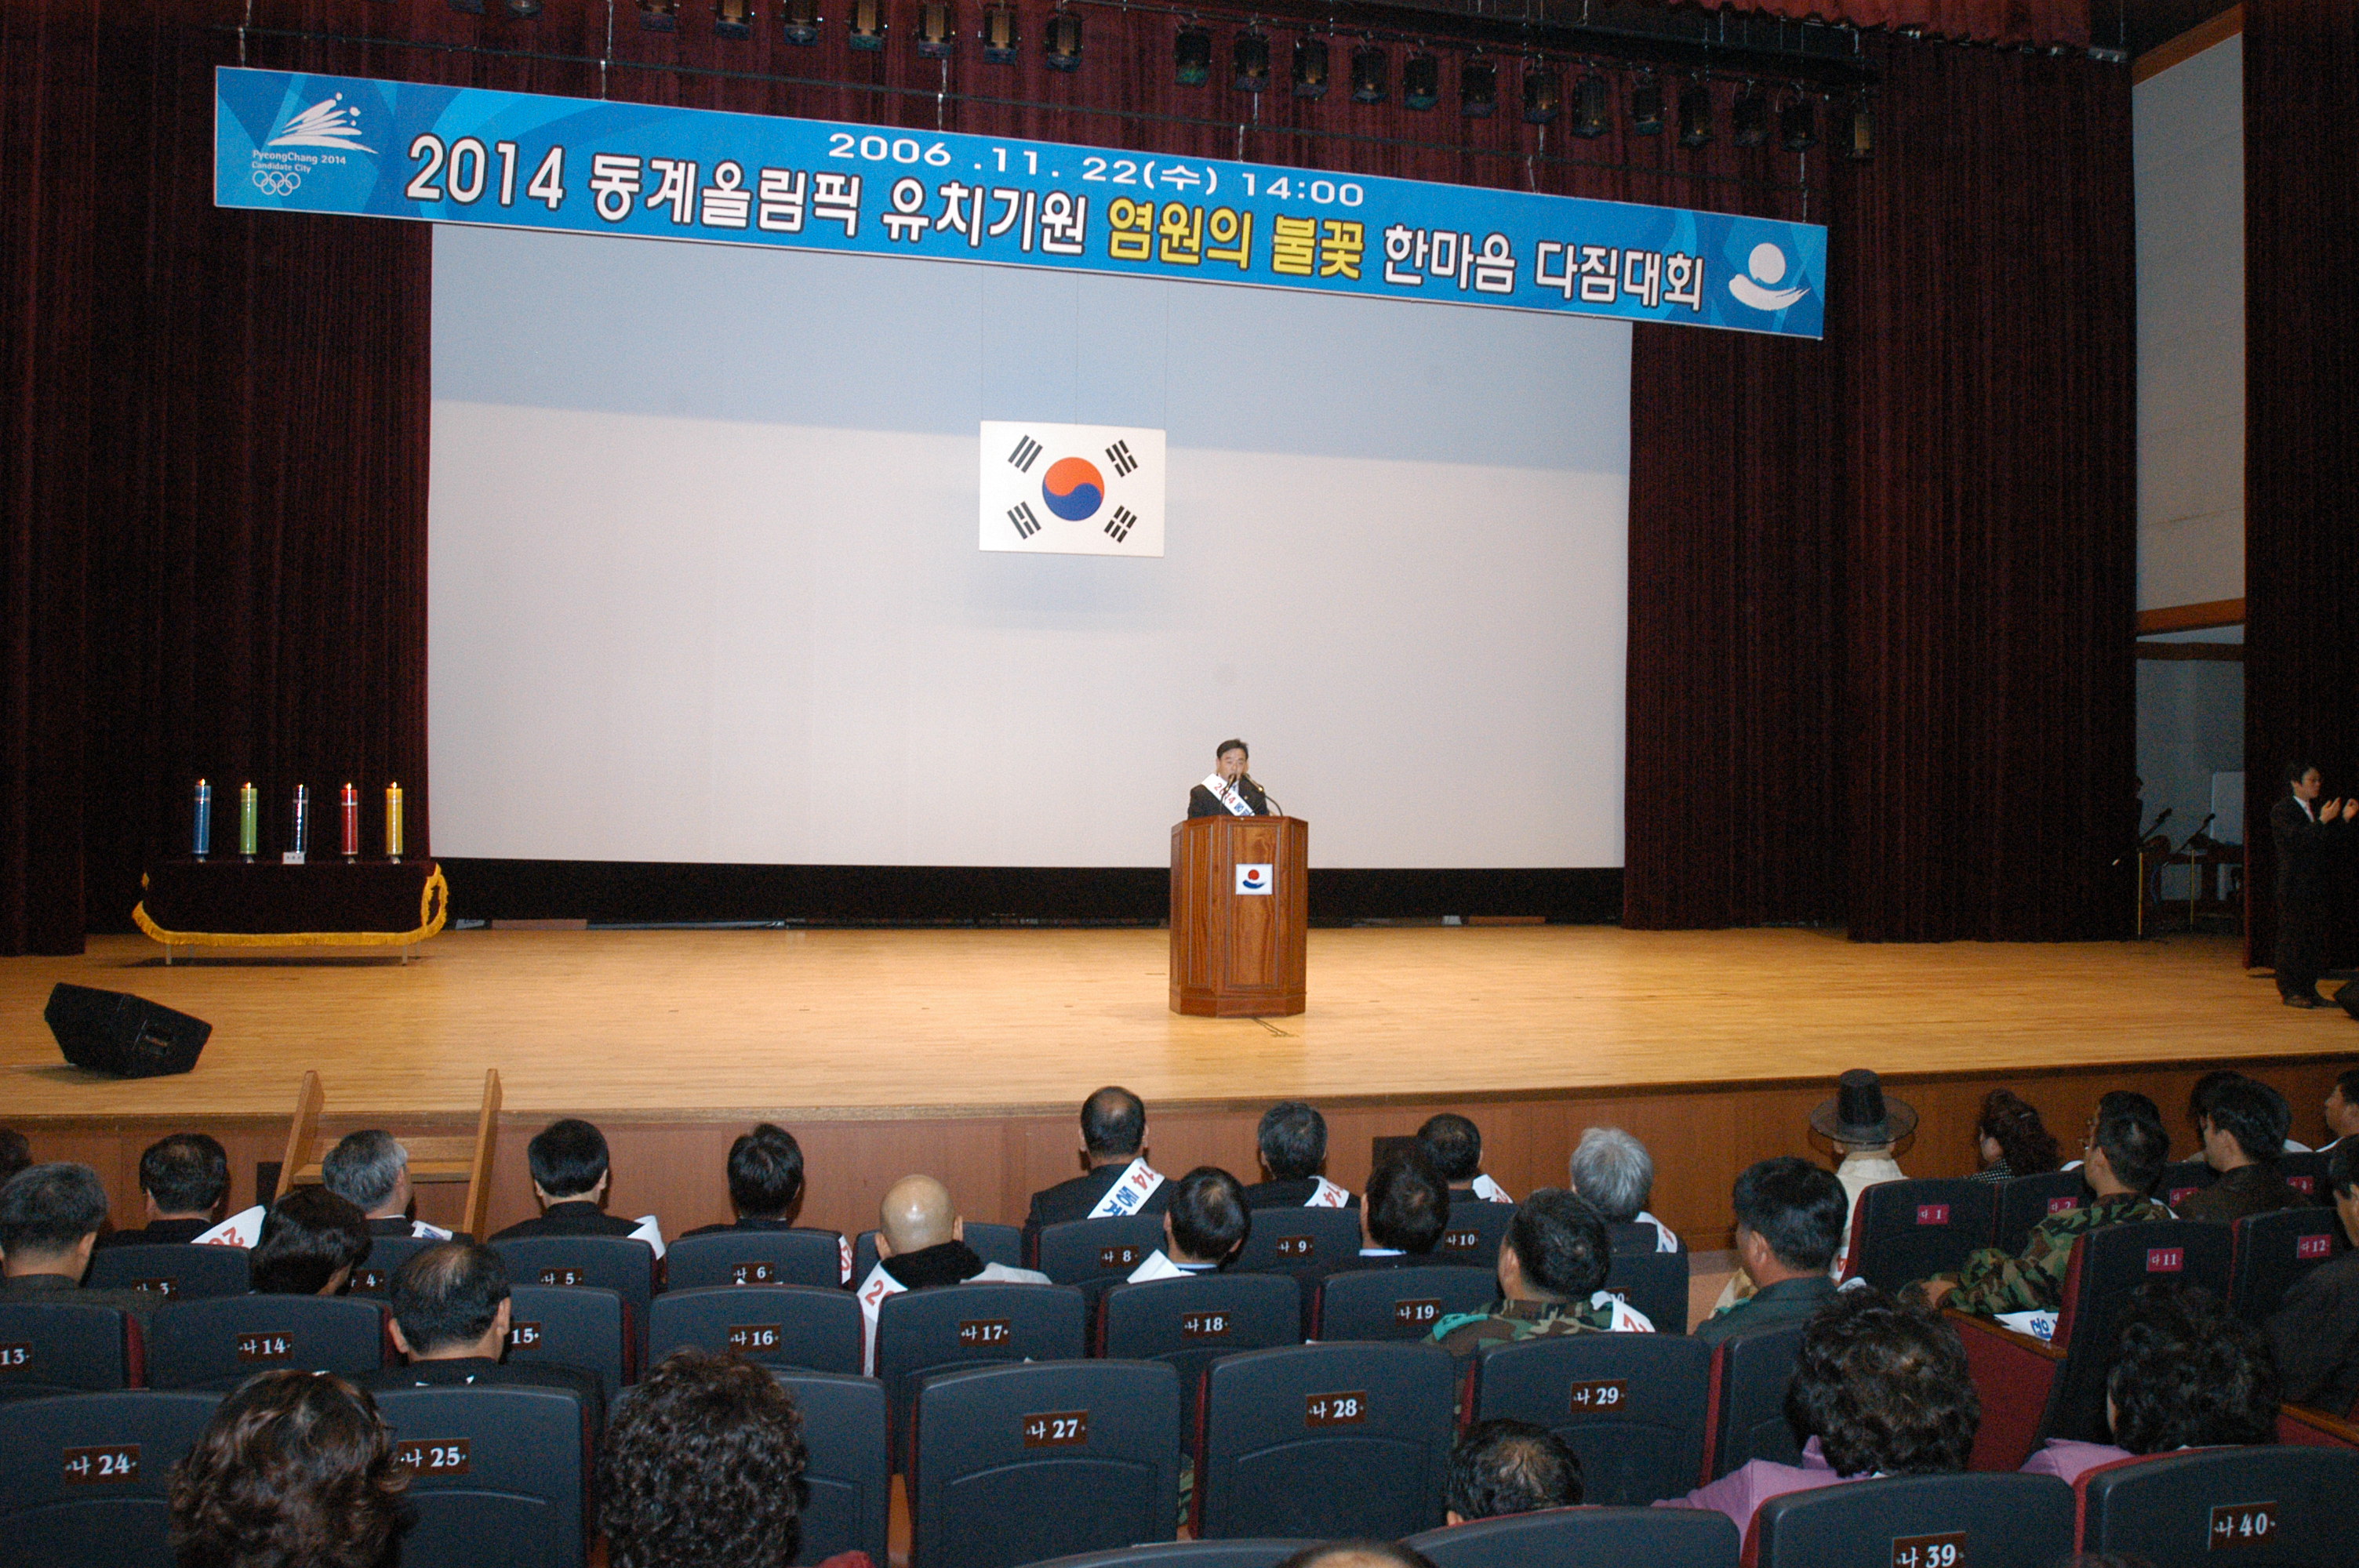 2014동계올림픽 유치다짐대회(2006.11.22) 대표이미지